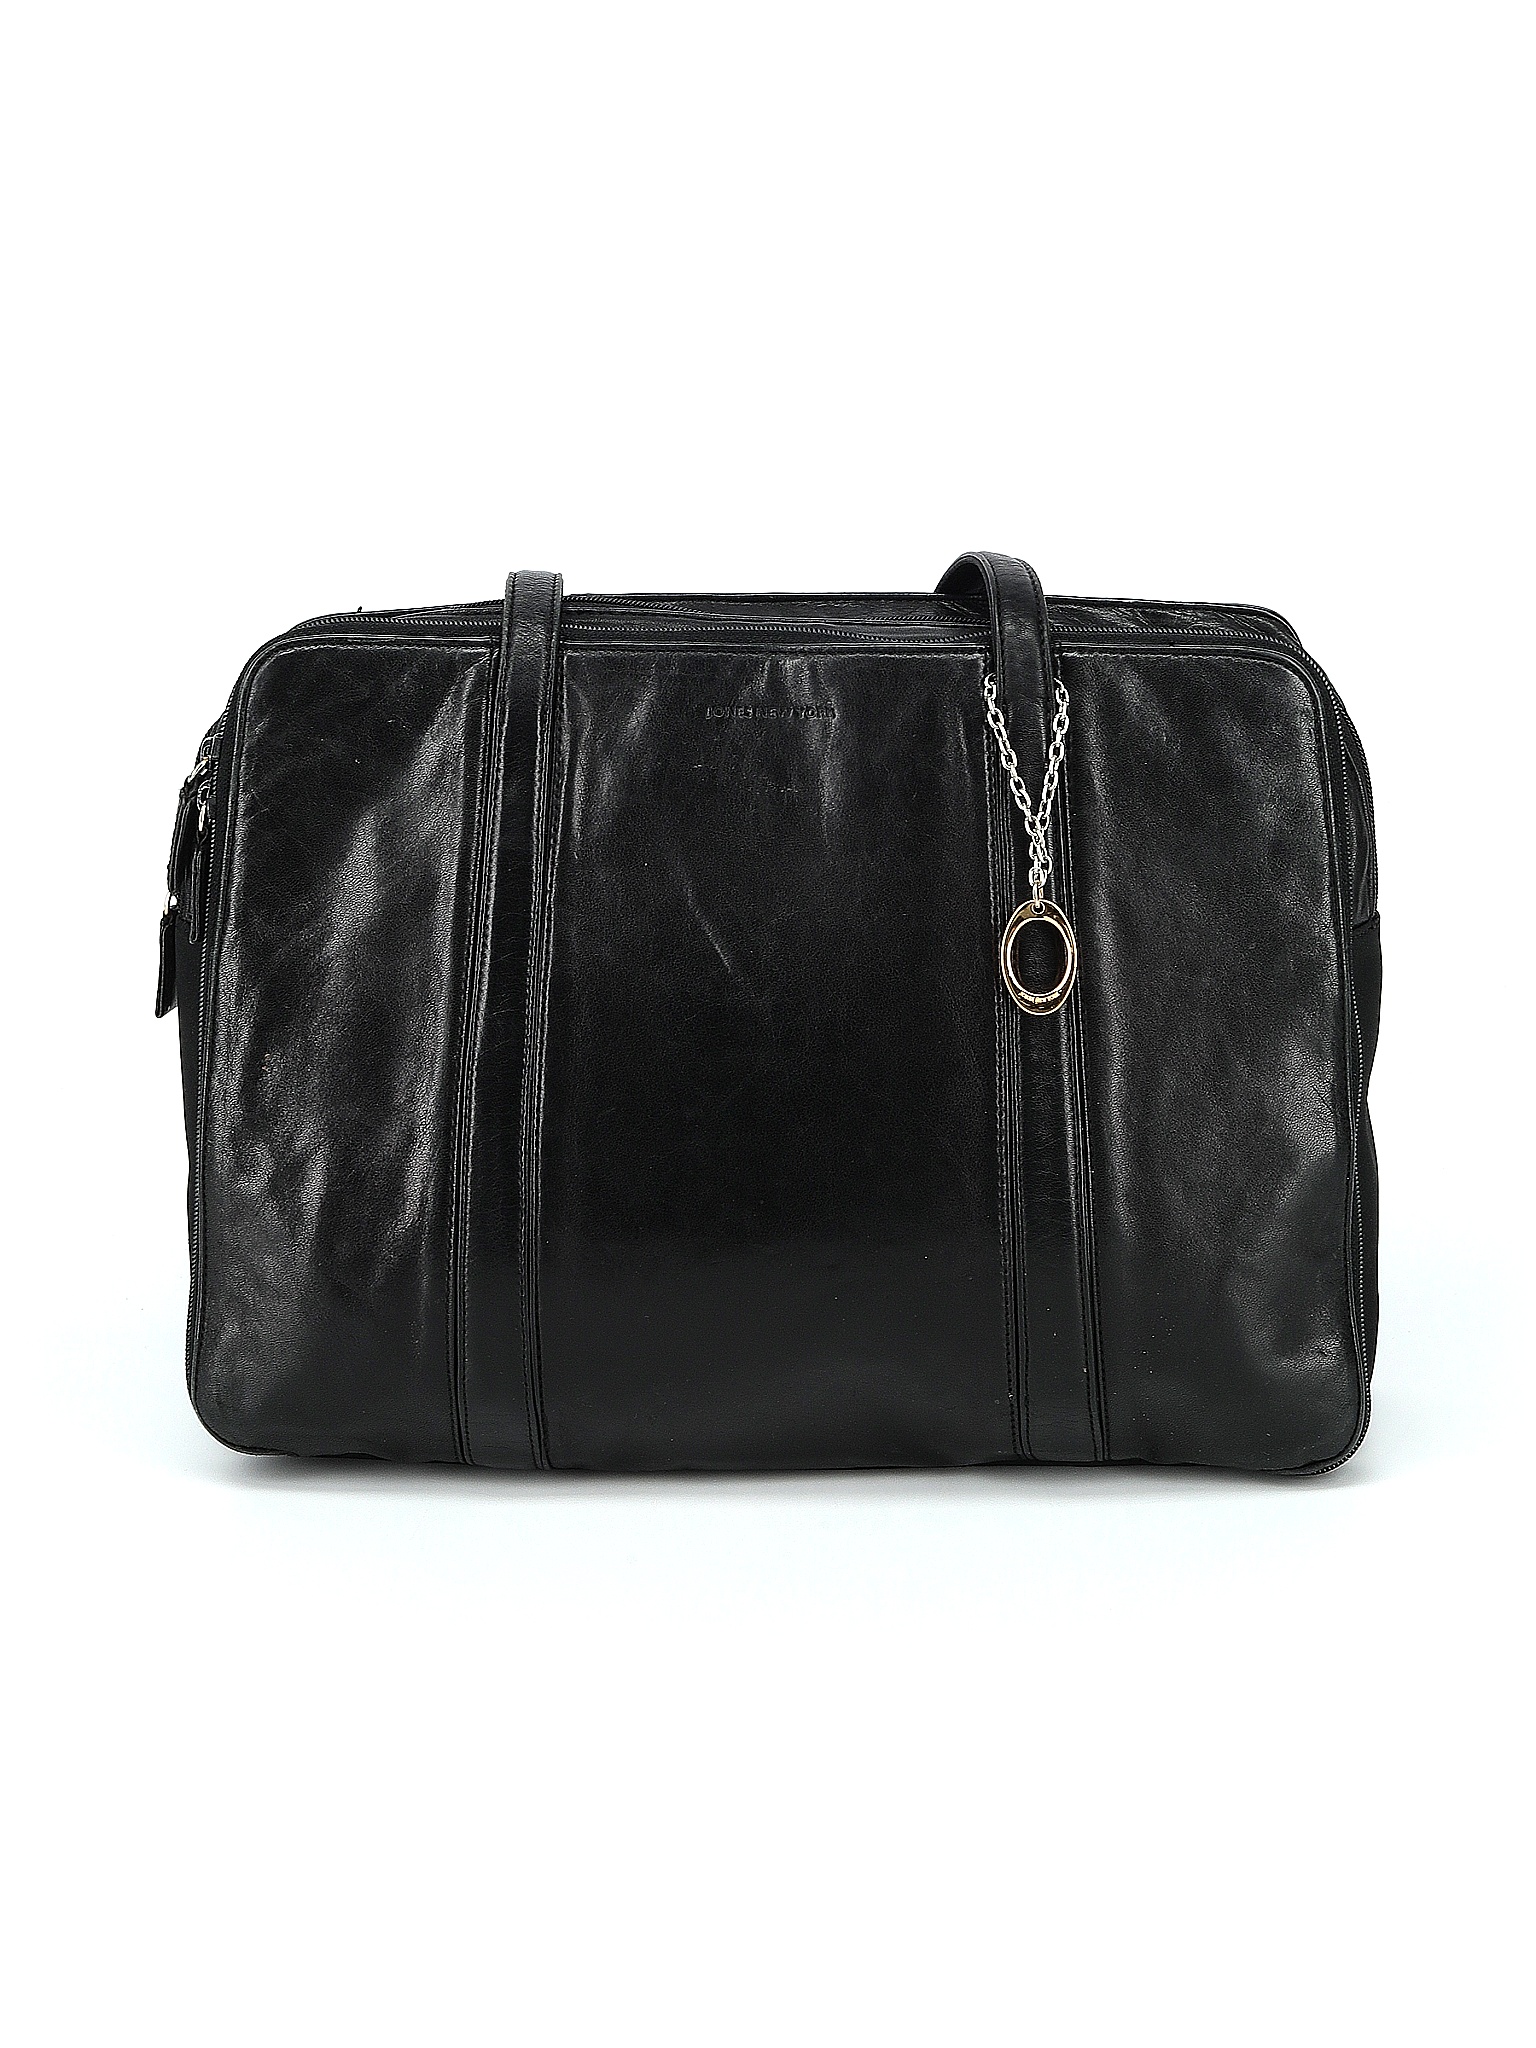 Jones New York Solid Black Leather Shoulder Bag One Size - 67% off ...